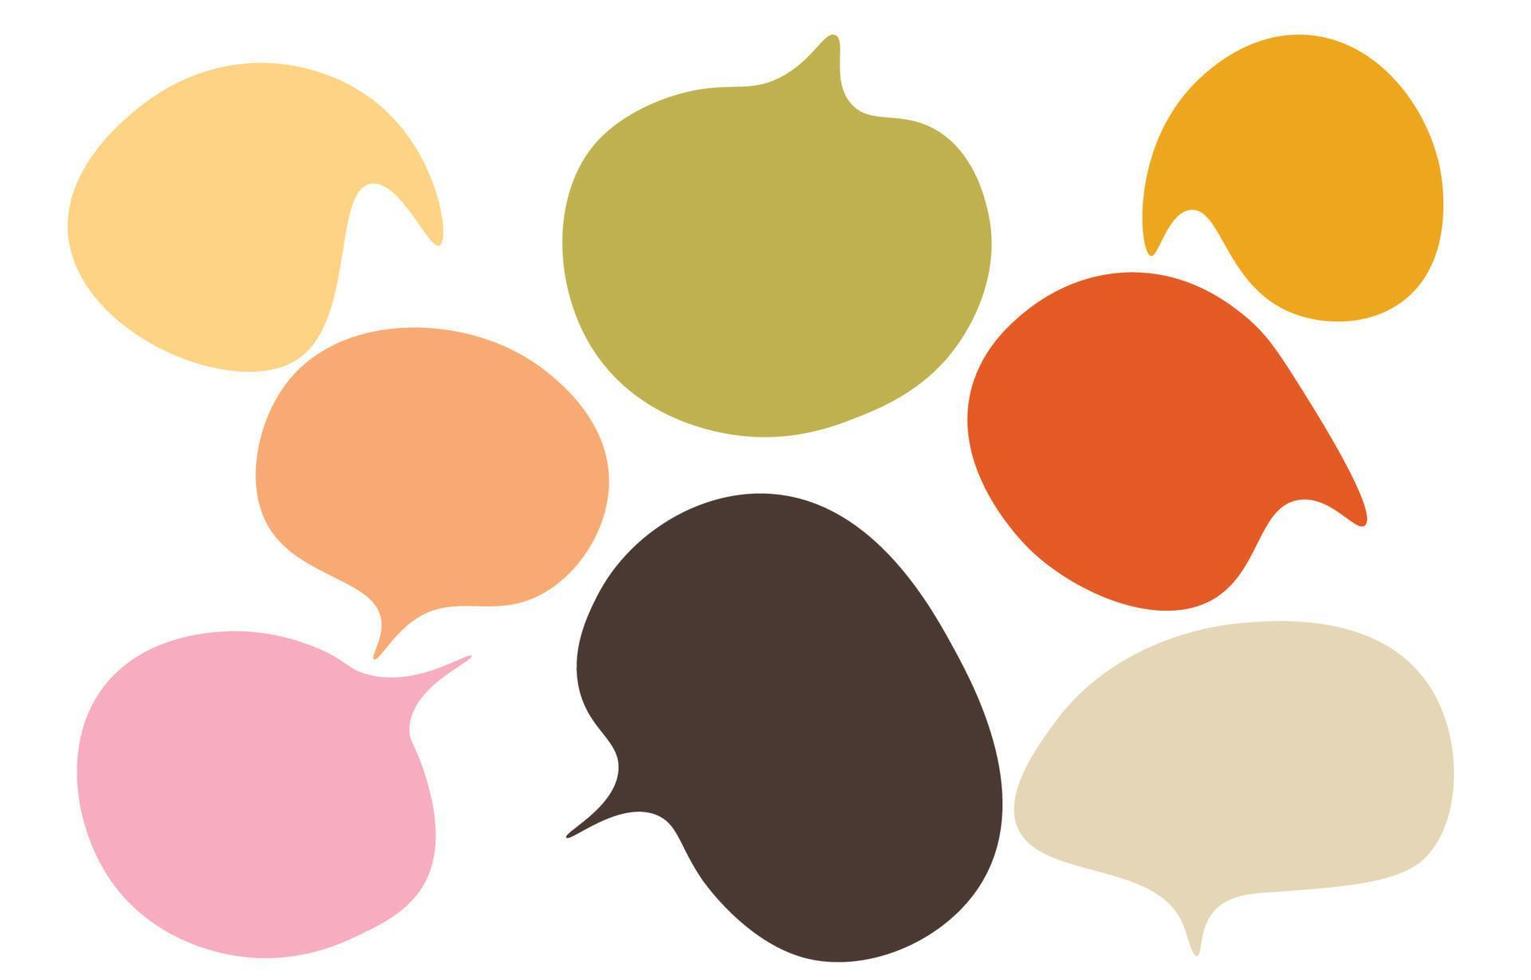 conjunto mínimo de bolhas de fala vazia pastel, contorno preto em um fundo branco, vetor falando ou falando bolha, estilo doodle